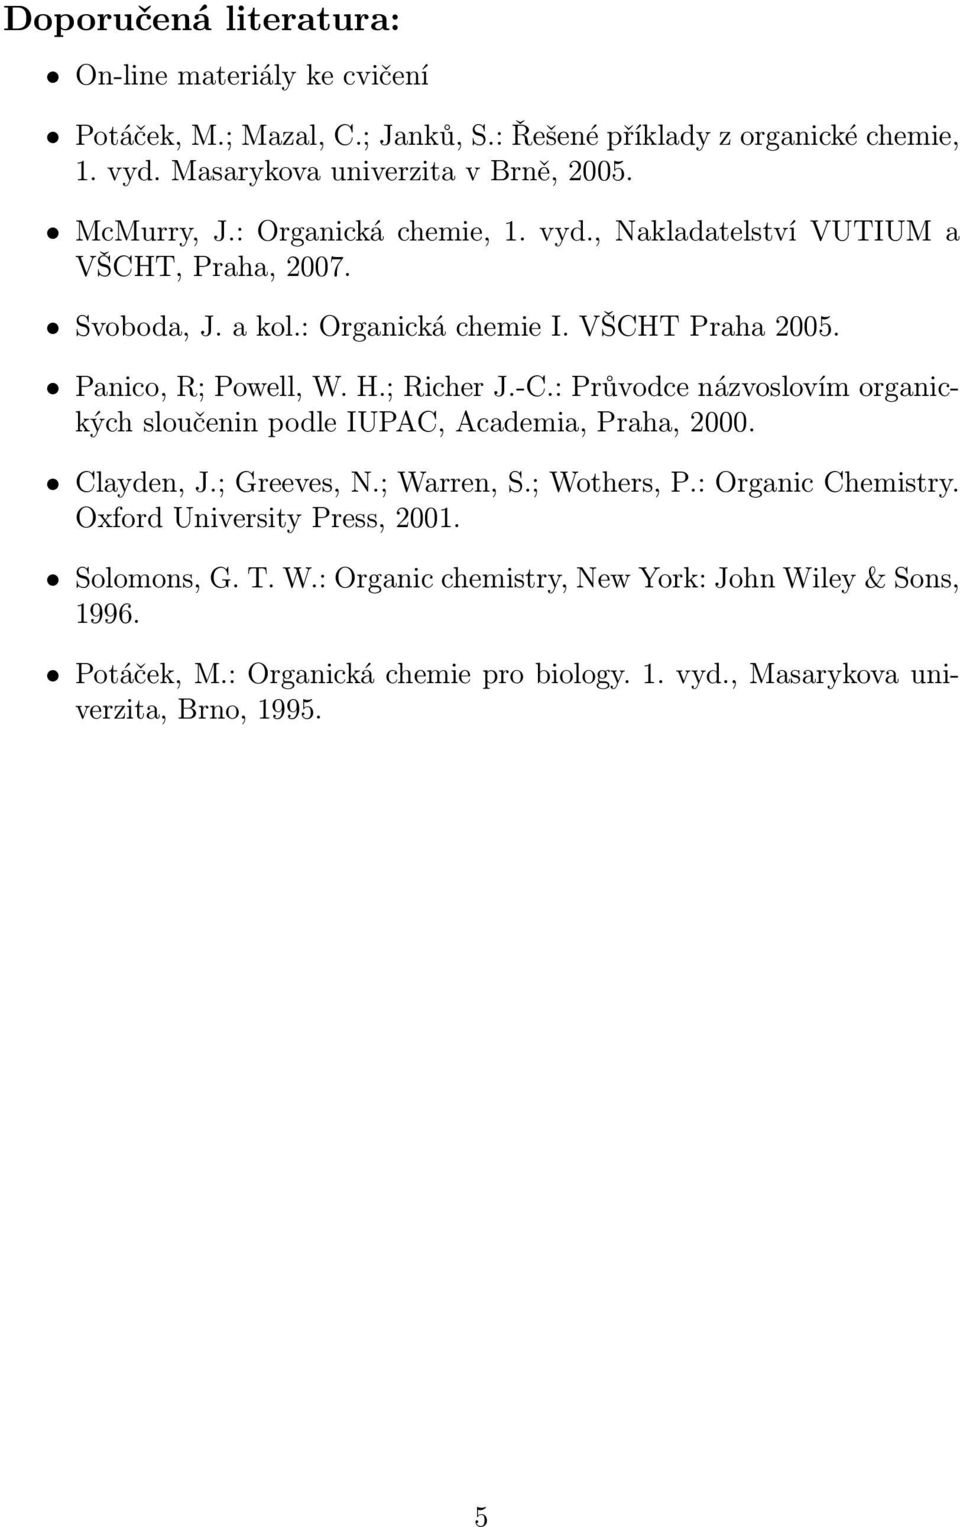 .; Richer J.-.: Průvodce názvoslovím organických sloučenin podle IUPA, Academia, Praha, 2000. ayden, J.; Greeves,.; Warren, S.; Wothers, P.: rganic hemistry.